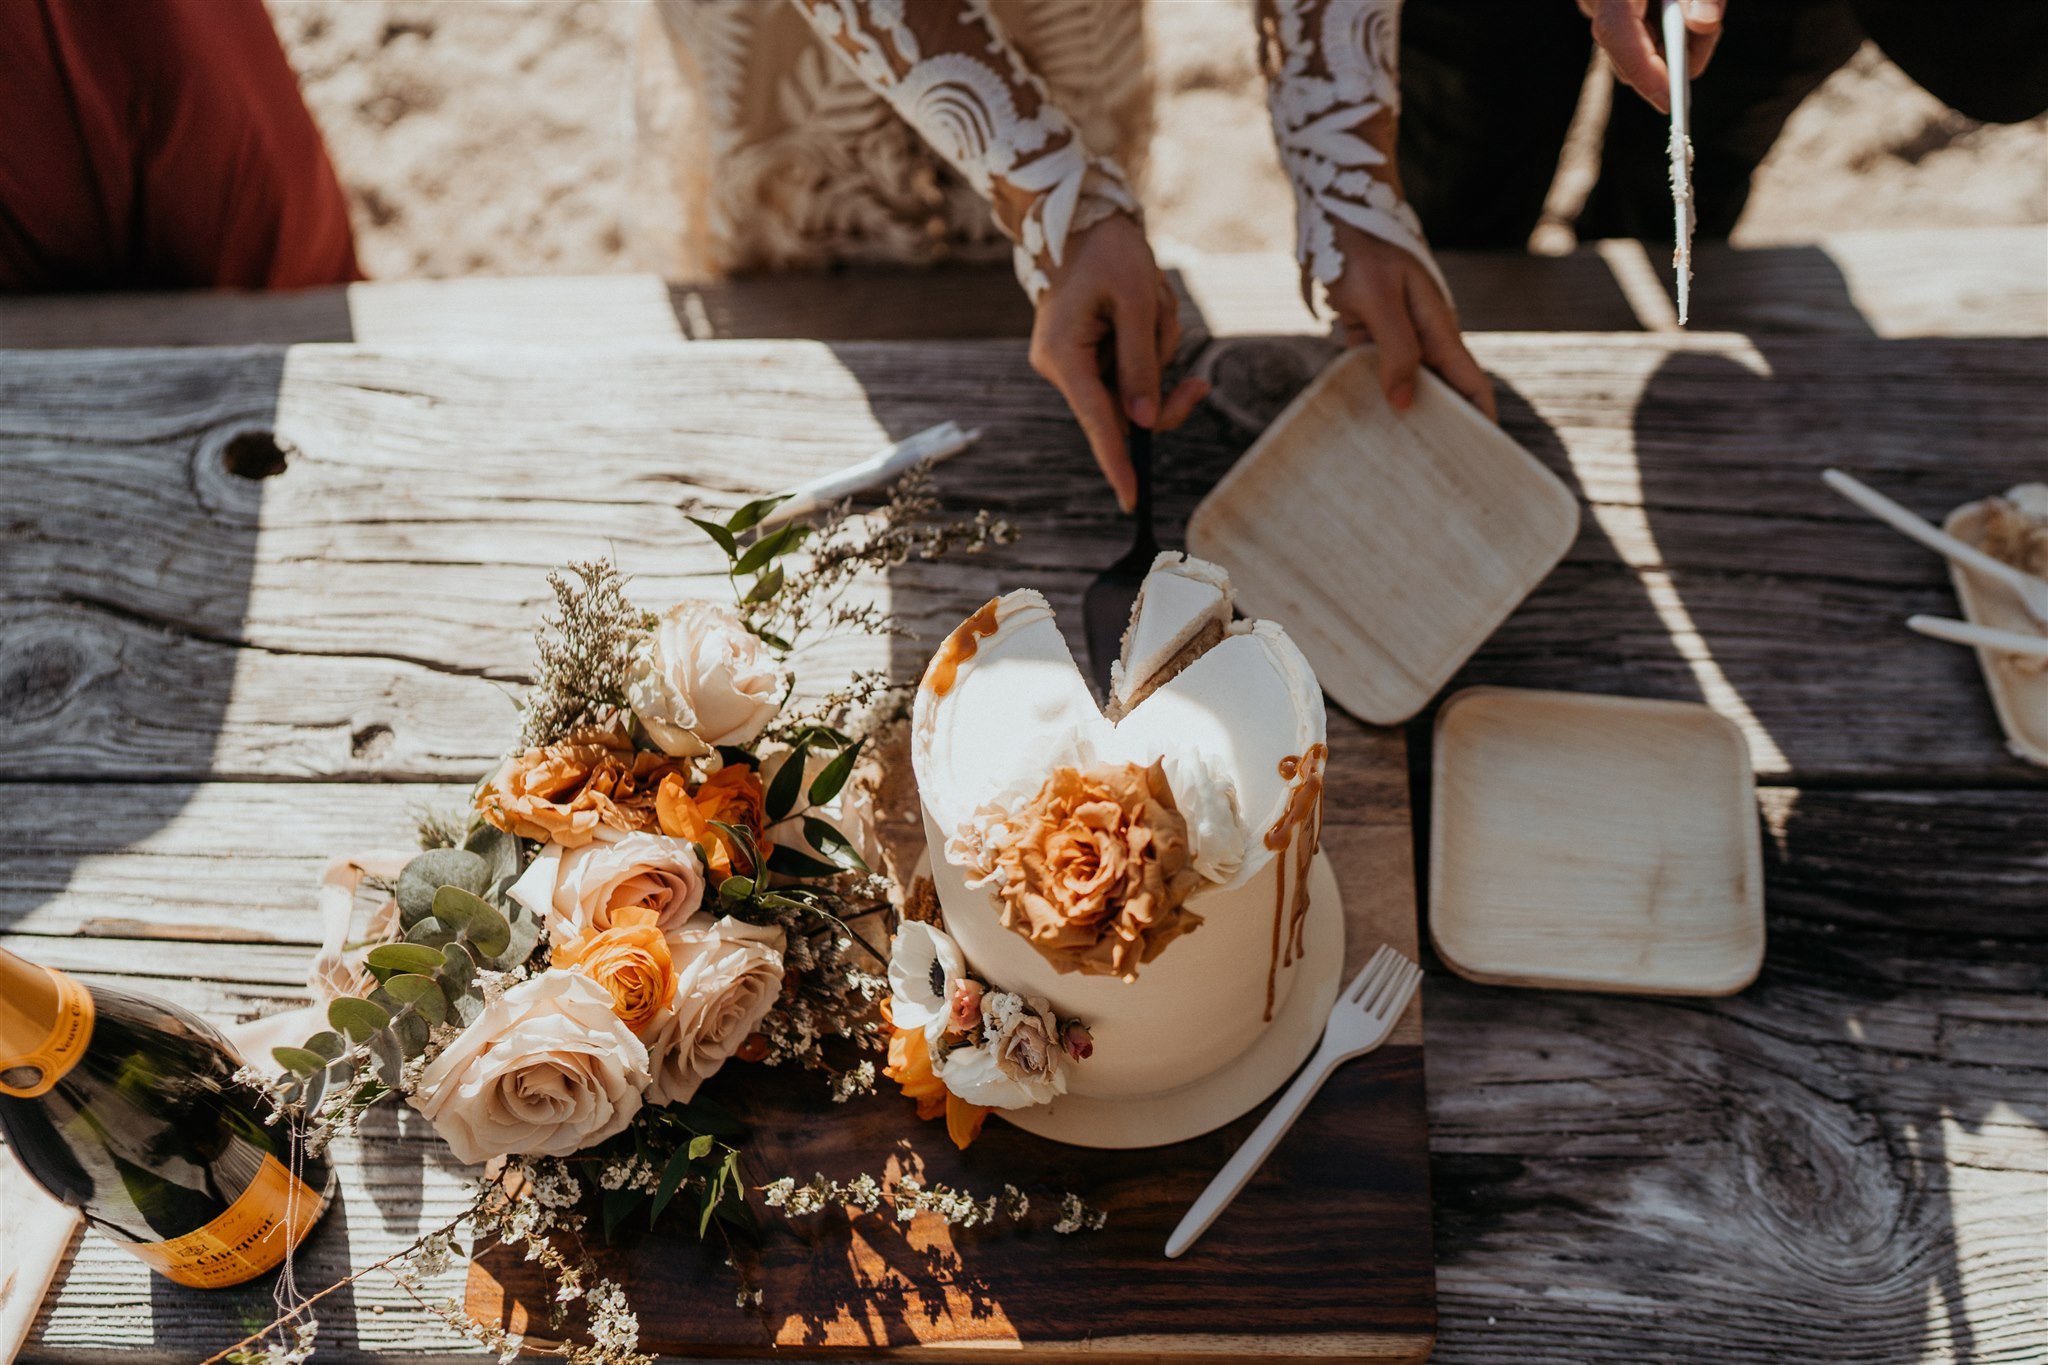 Bride cutting wedding cake at Lake Wenatchee elopement